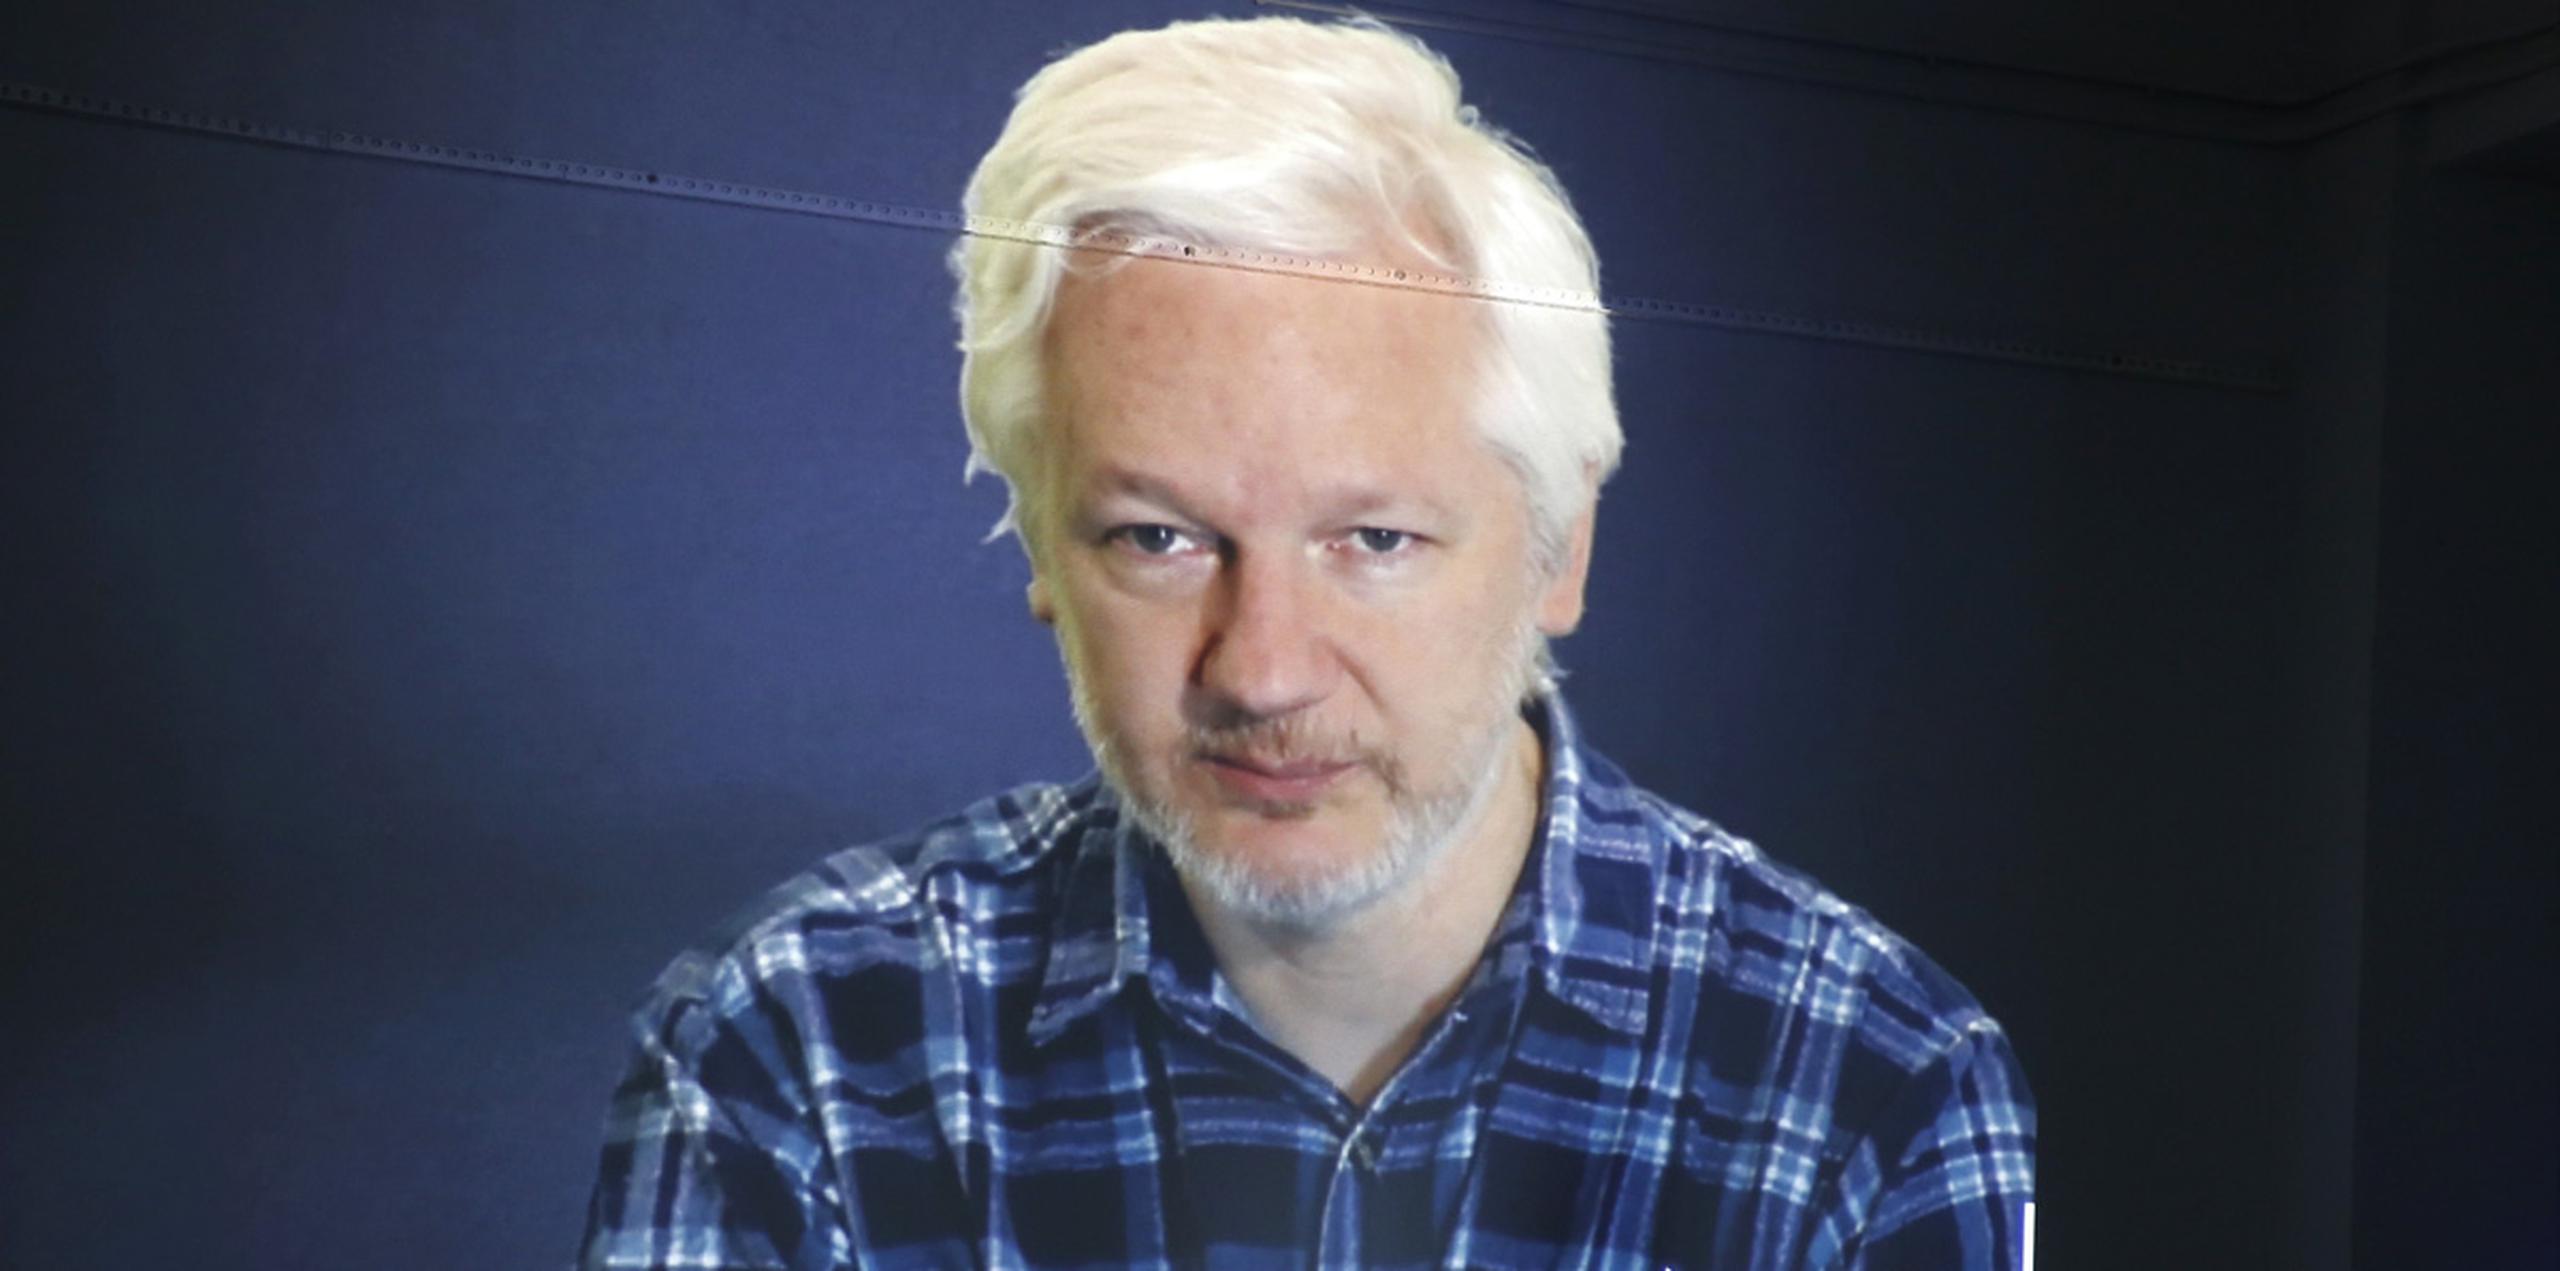 Assange agradeció a Ecuador el apoyo que le ha dado pese a las presiones y amenazas de grandes organismos y estados afectados por las filtraciones de WikiLeaks, especialmente la CIA y Estados Unidos. (AP)